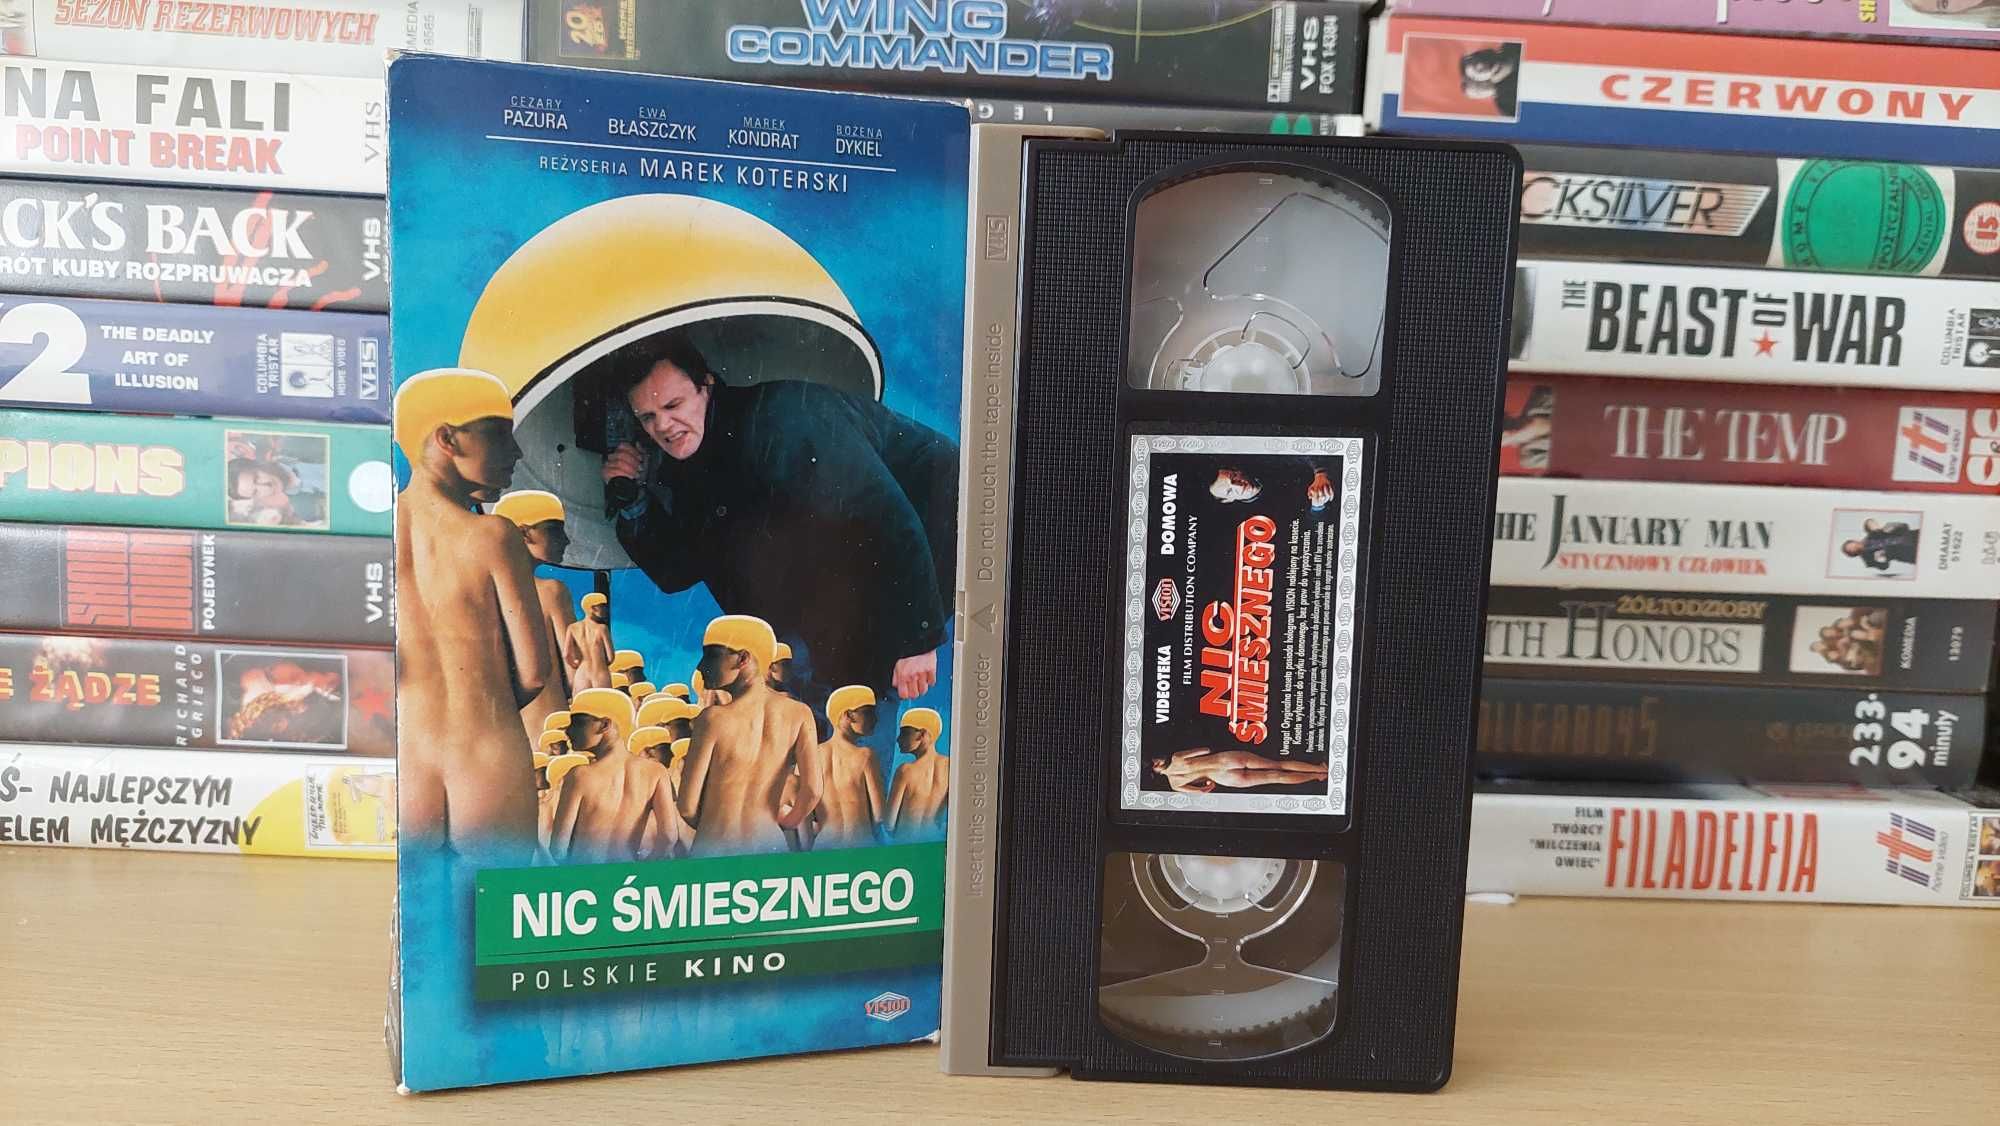 Nic Śmiesznego - (Film Polski) - VHS